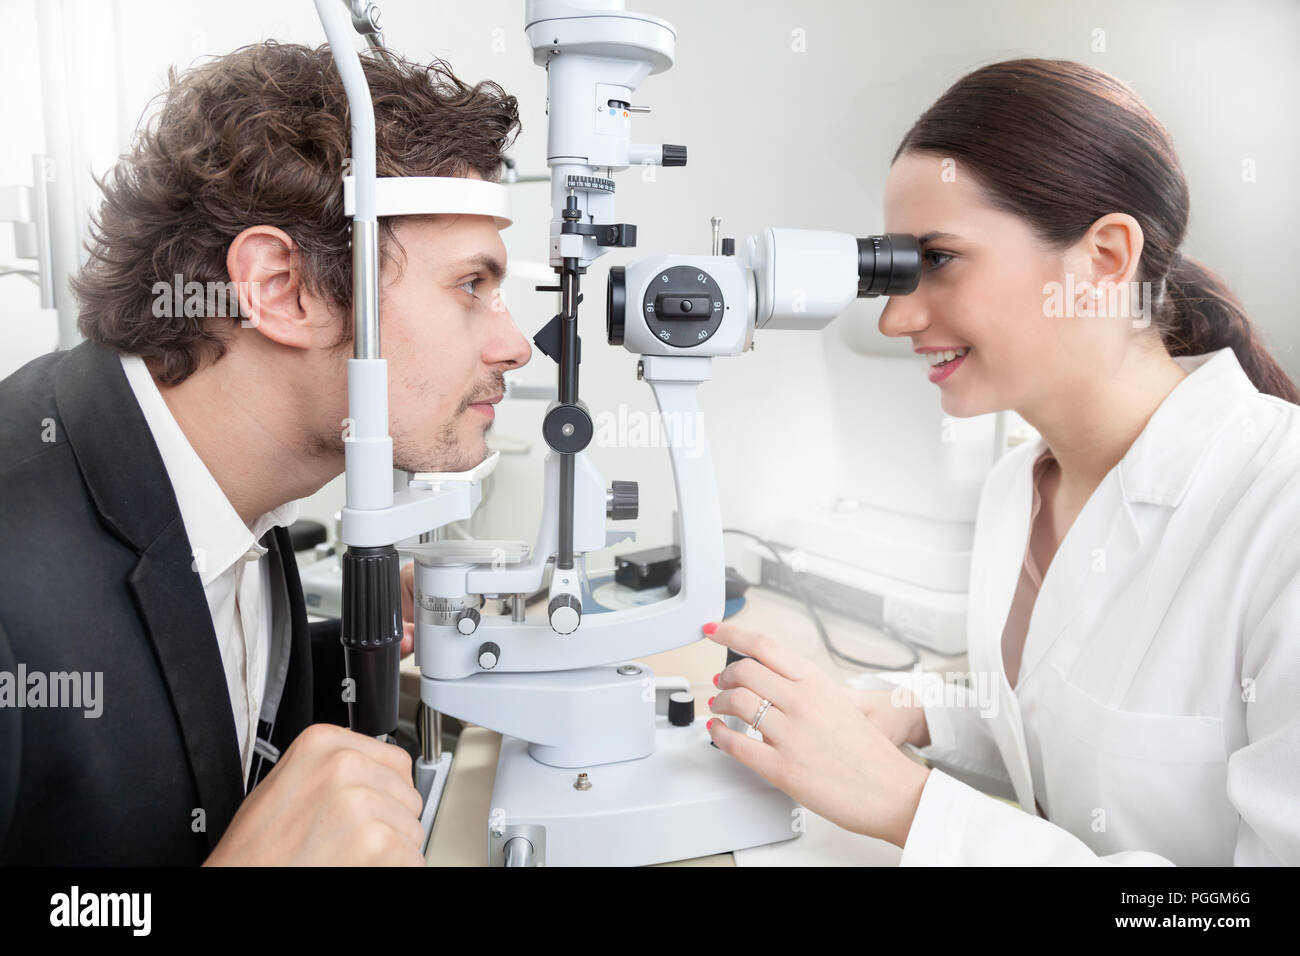 Ein Mensch, der hatte ein Auge Test mit Spaltlampe/Ärztin in der Augenheilkunde Klinik tun Netzhaut Hornhaut Untersuchung Diagnose mit Vision des Patienten durch moderne c Stockfoto